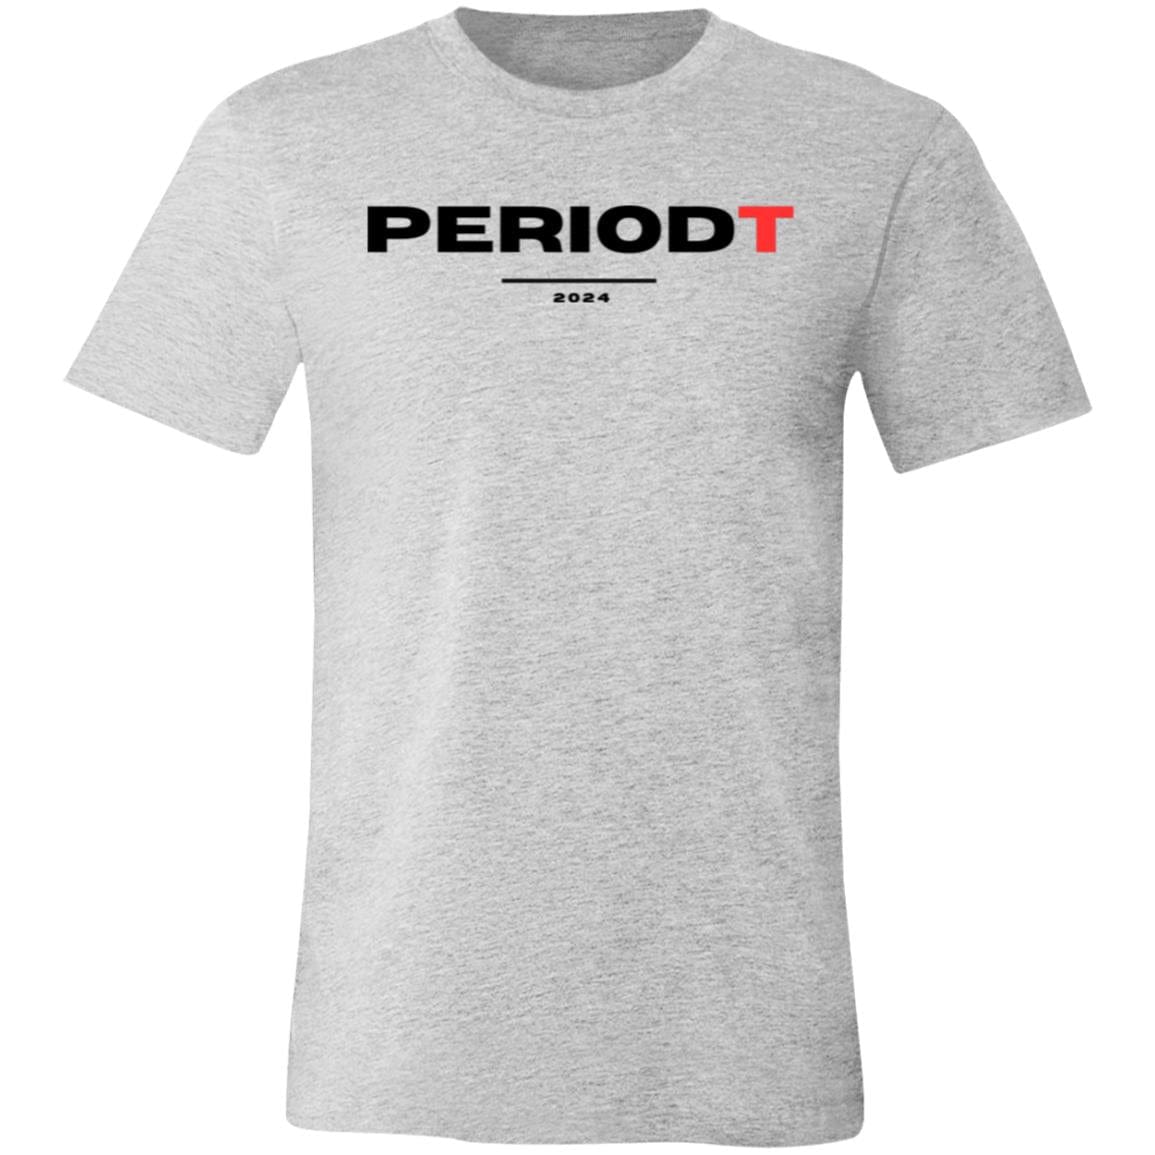 PERIODT Unisex Jersey Short-Sleeve T-Shirt